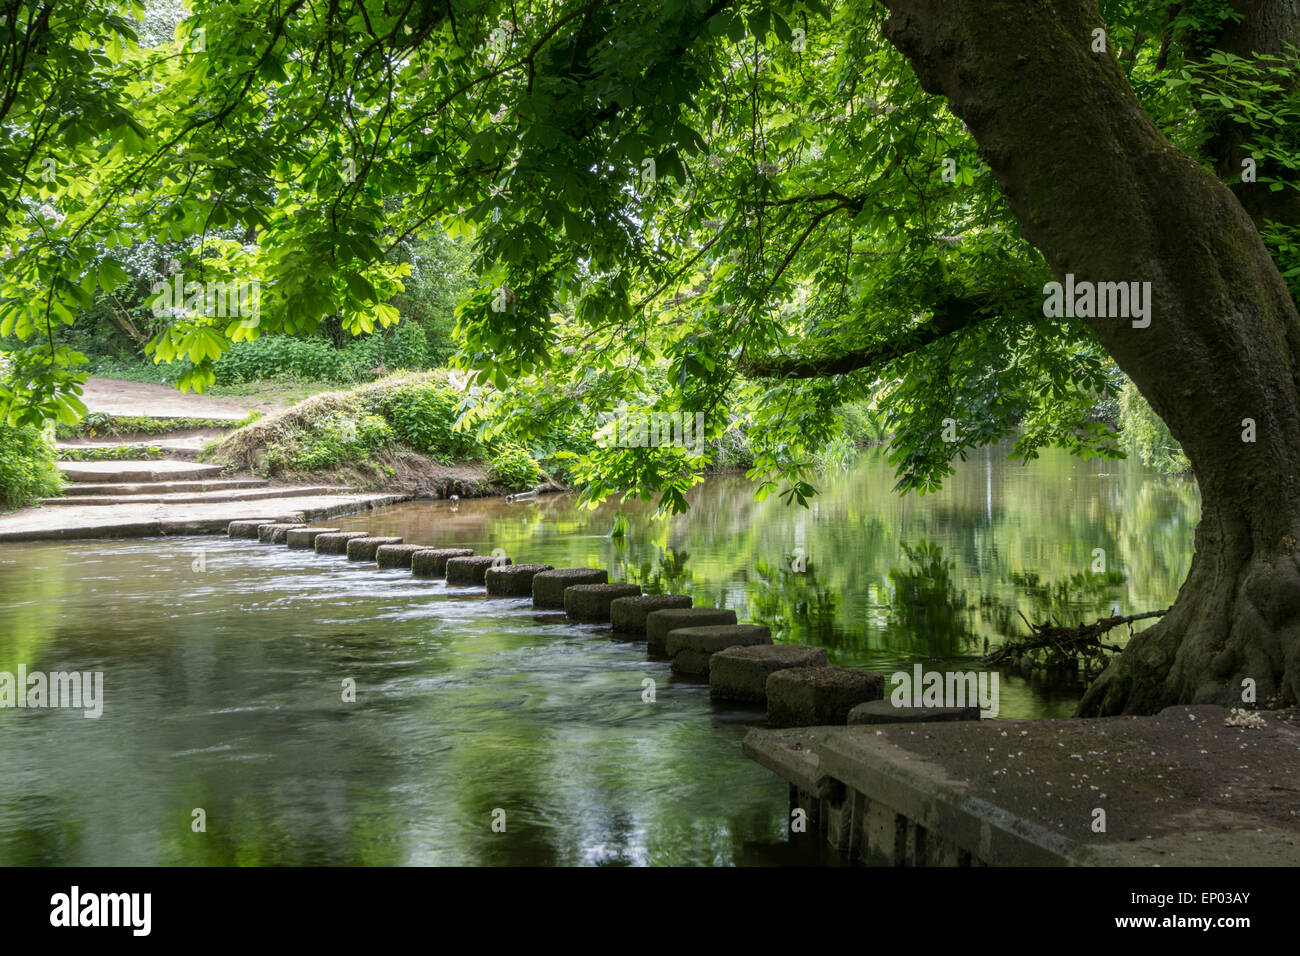 Pierres de gué sur la rivière Mole, Surrey, Angleterre Banque D'Images